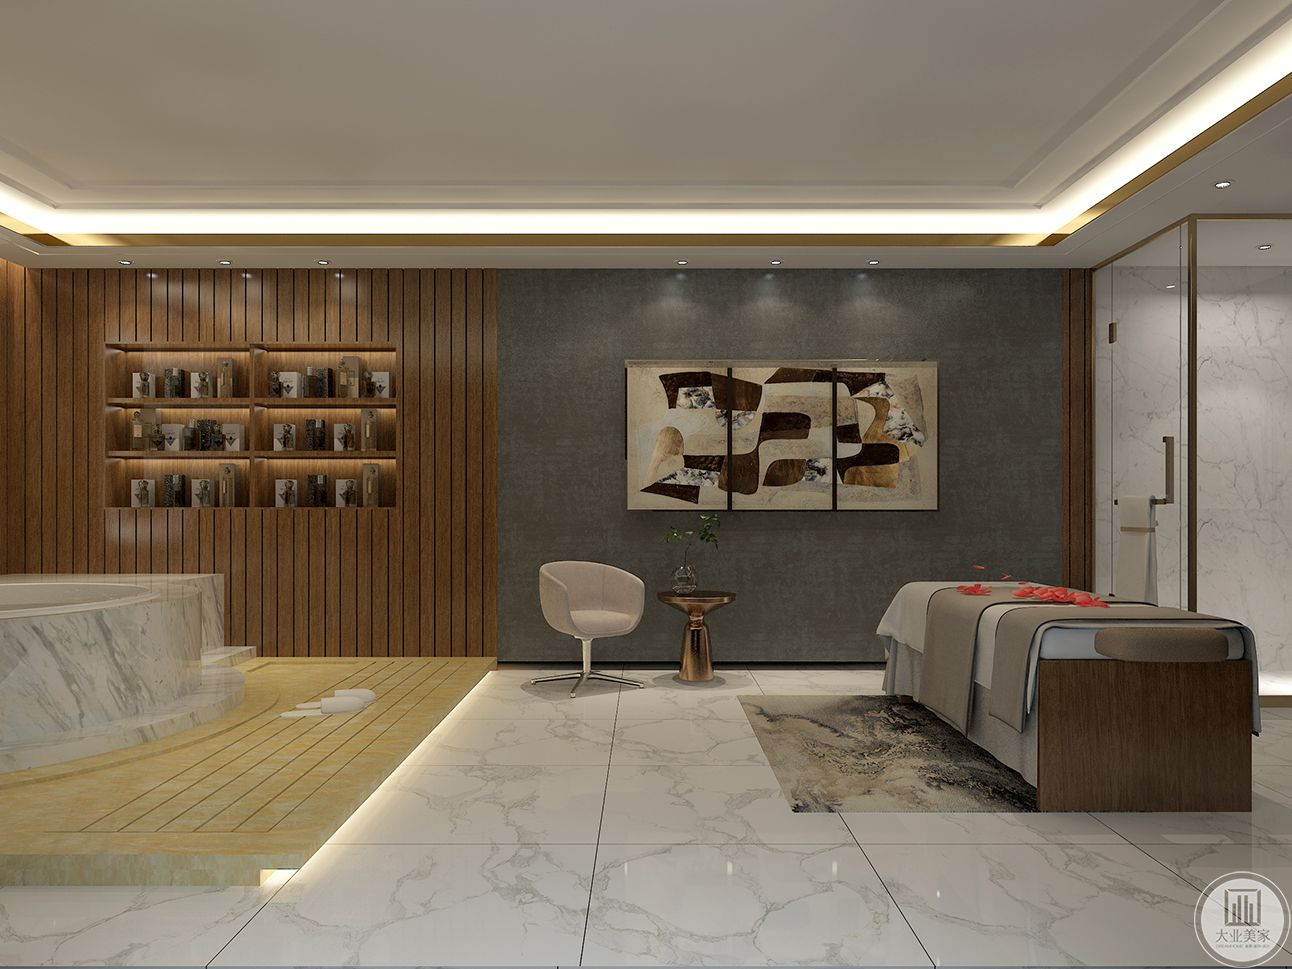 该区域为休息区，整体墙面采用灰色系，与客厅相同风格色系的感觉。